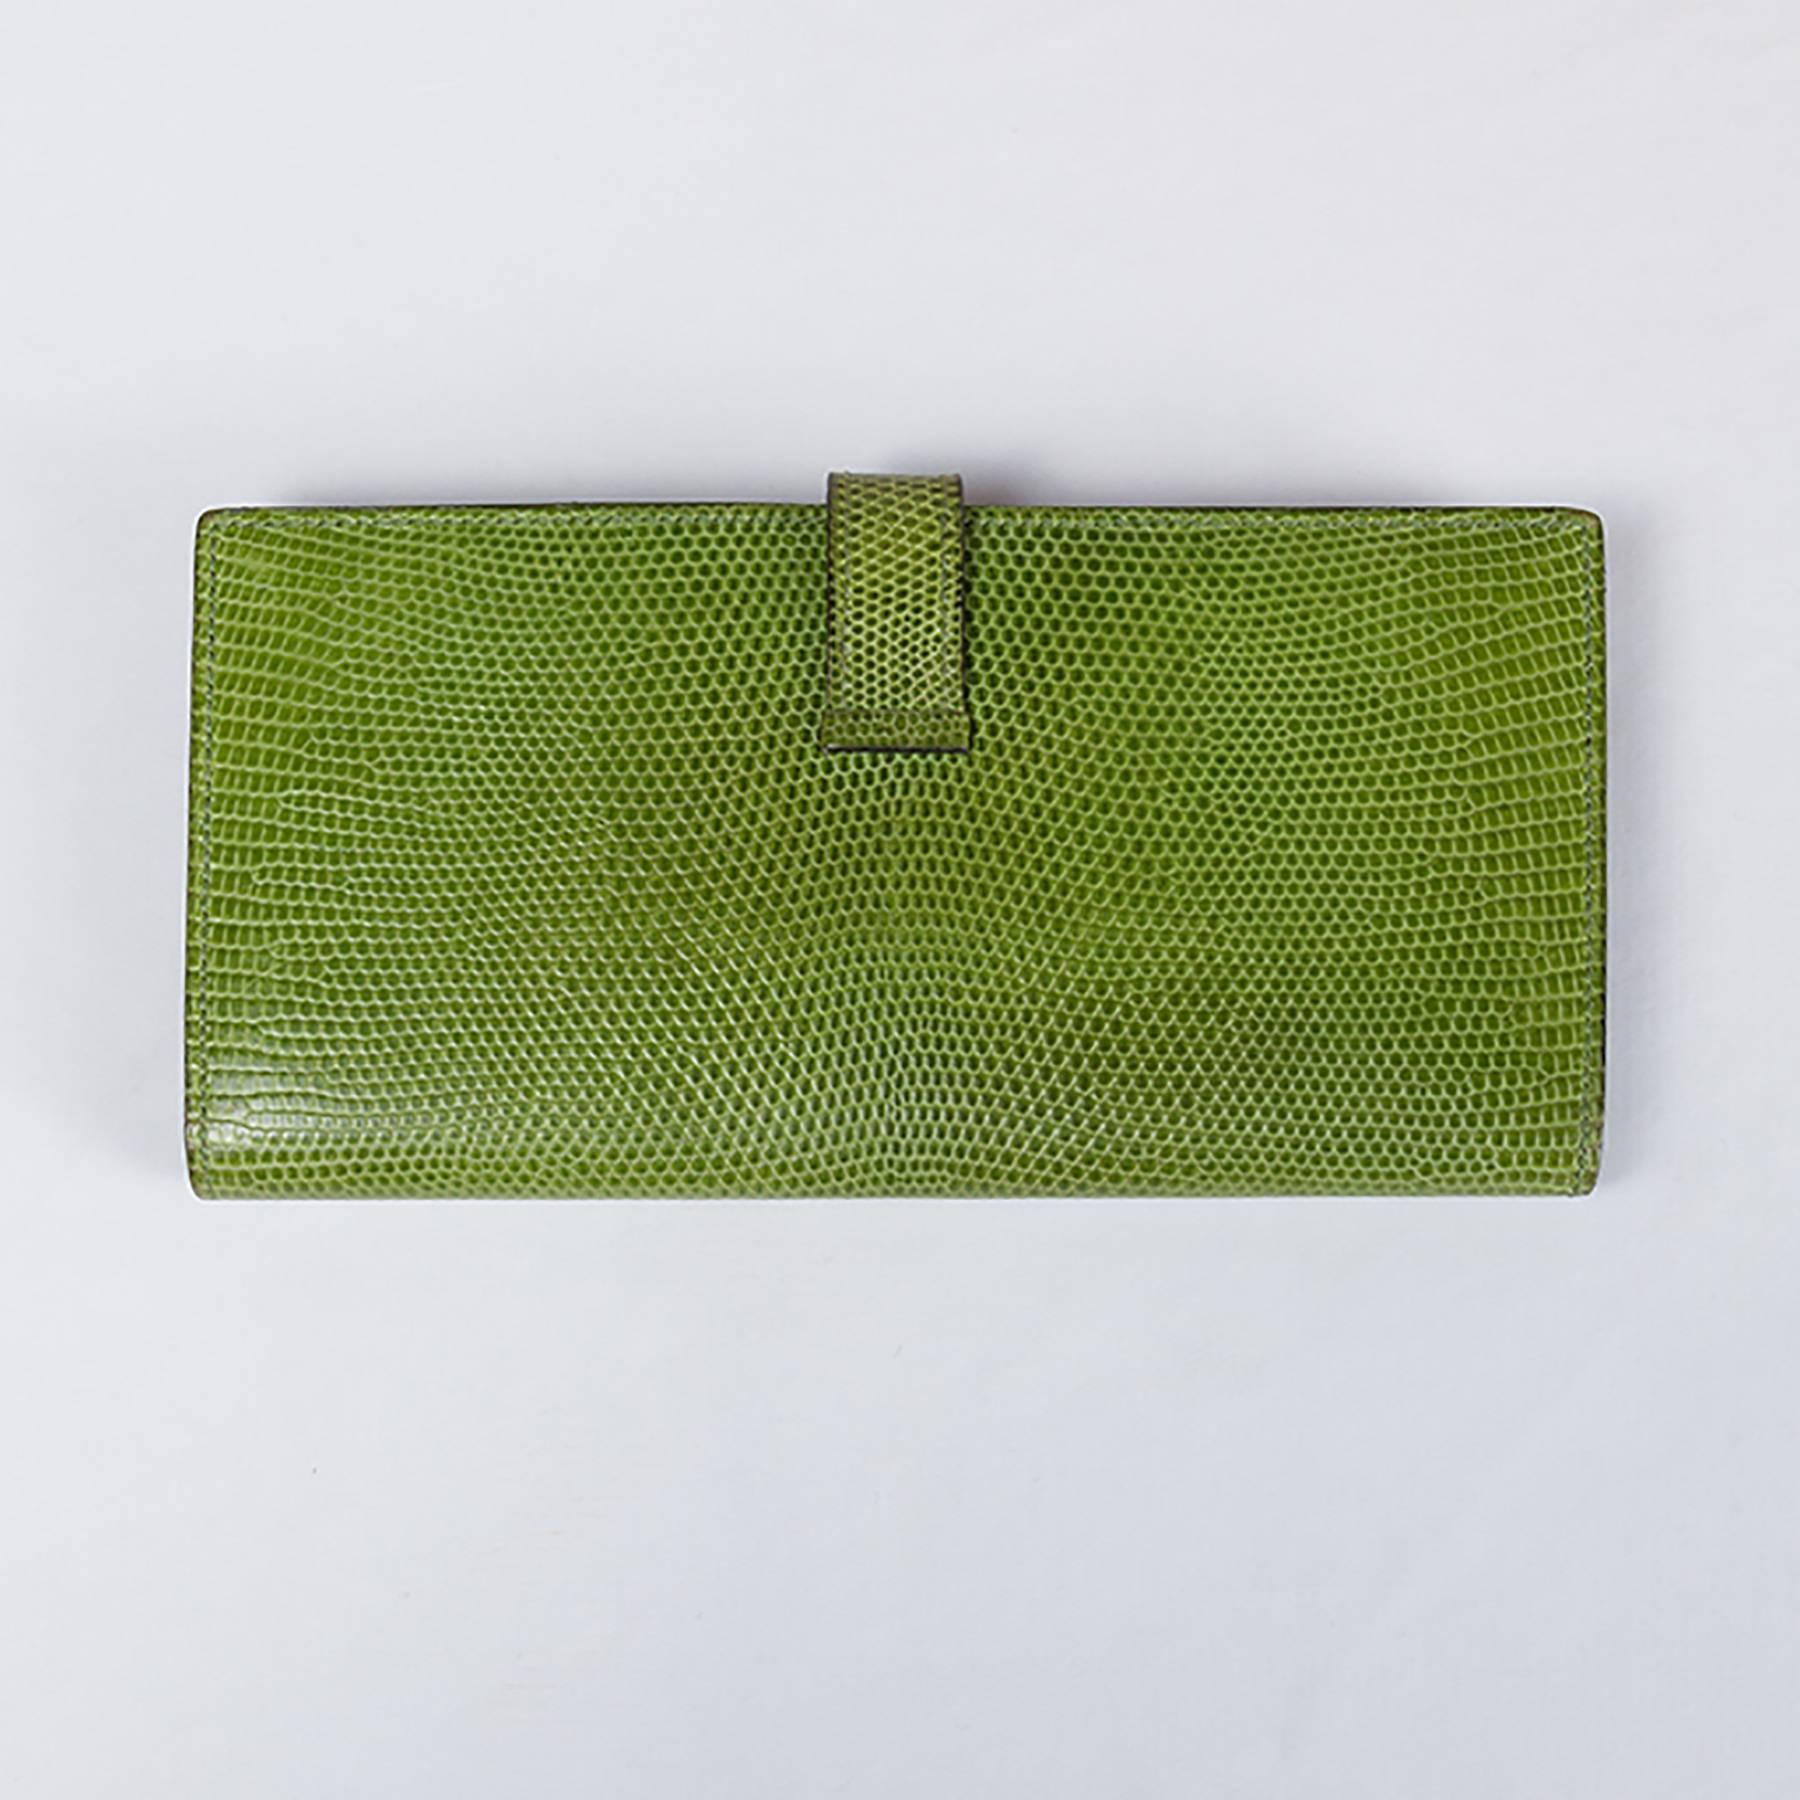 Wallet, Béarn model, in green lizard.
Year 2010.
